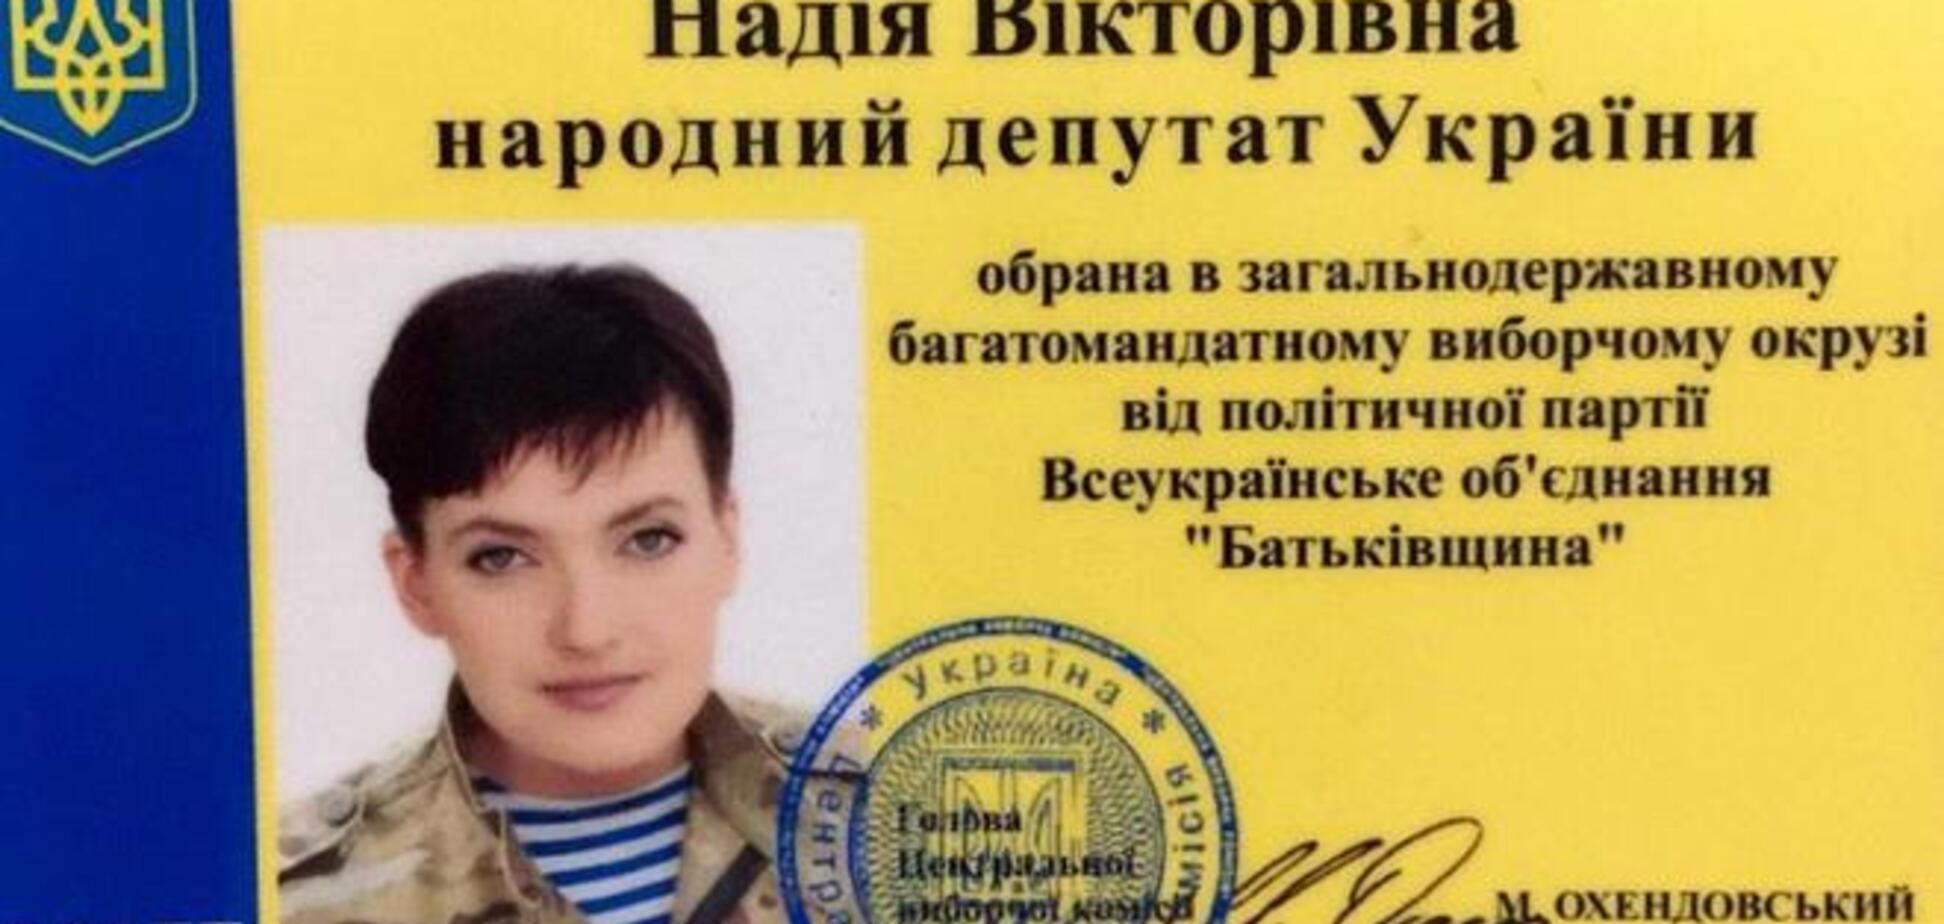 Адвокат Савченко показал ее депутатское удостоверение: фотофакт